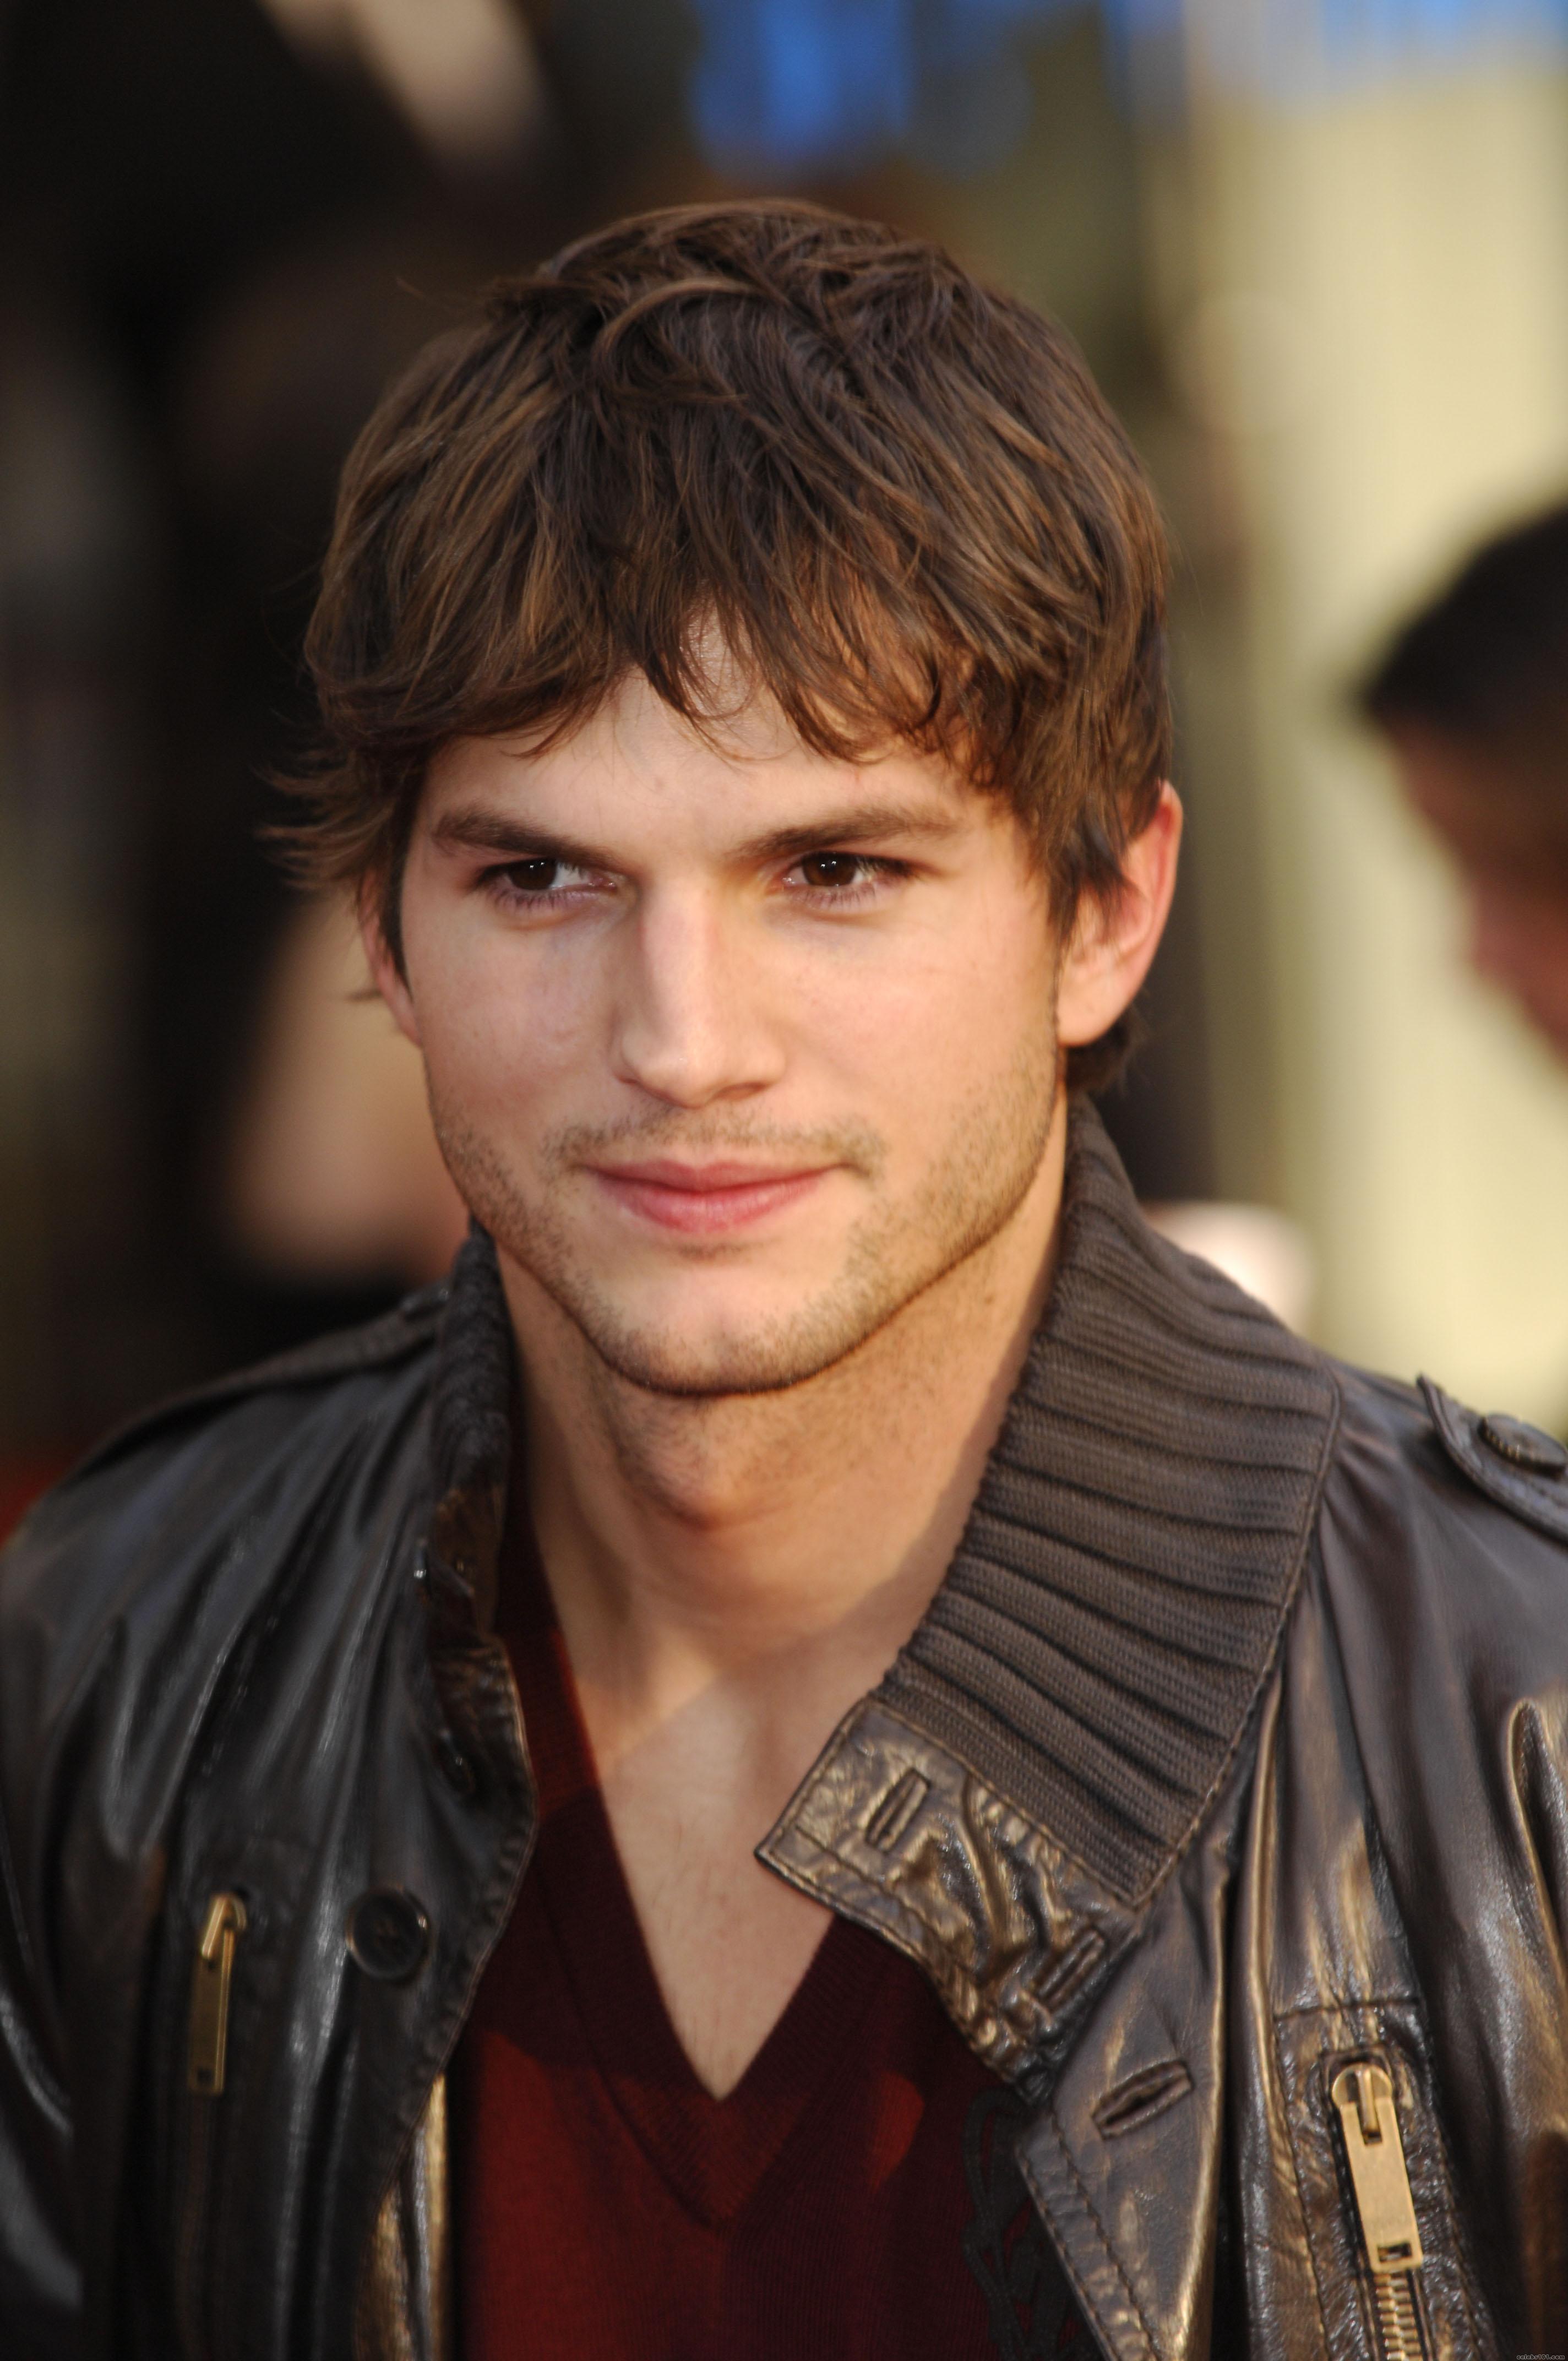 http://www.celebs101.com/gallery/Ashton_Kutcher/211666/Ashton_Kutcher_76.jpg